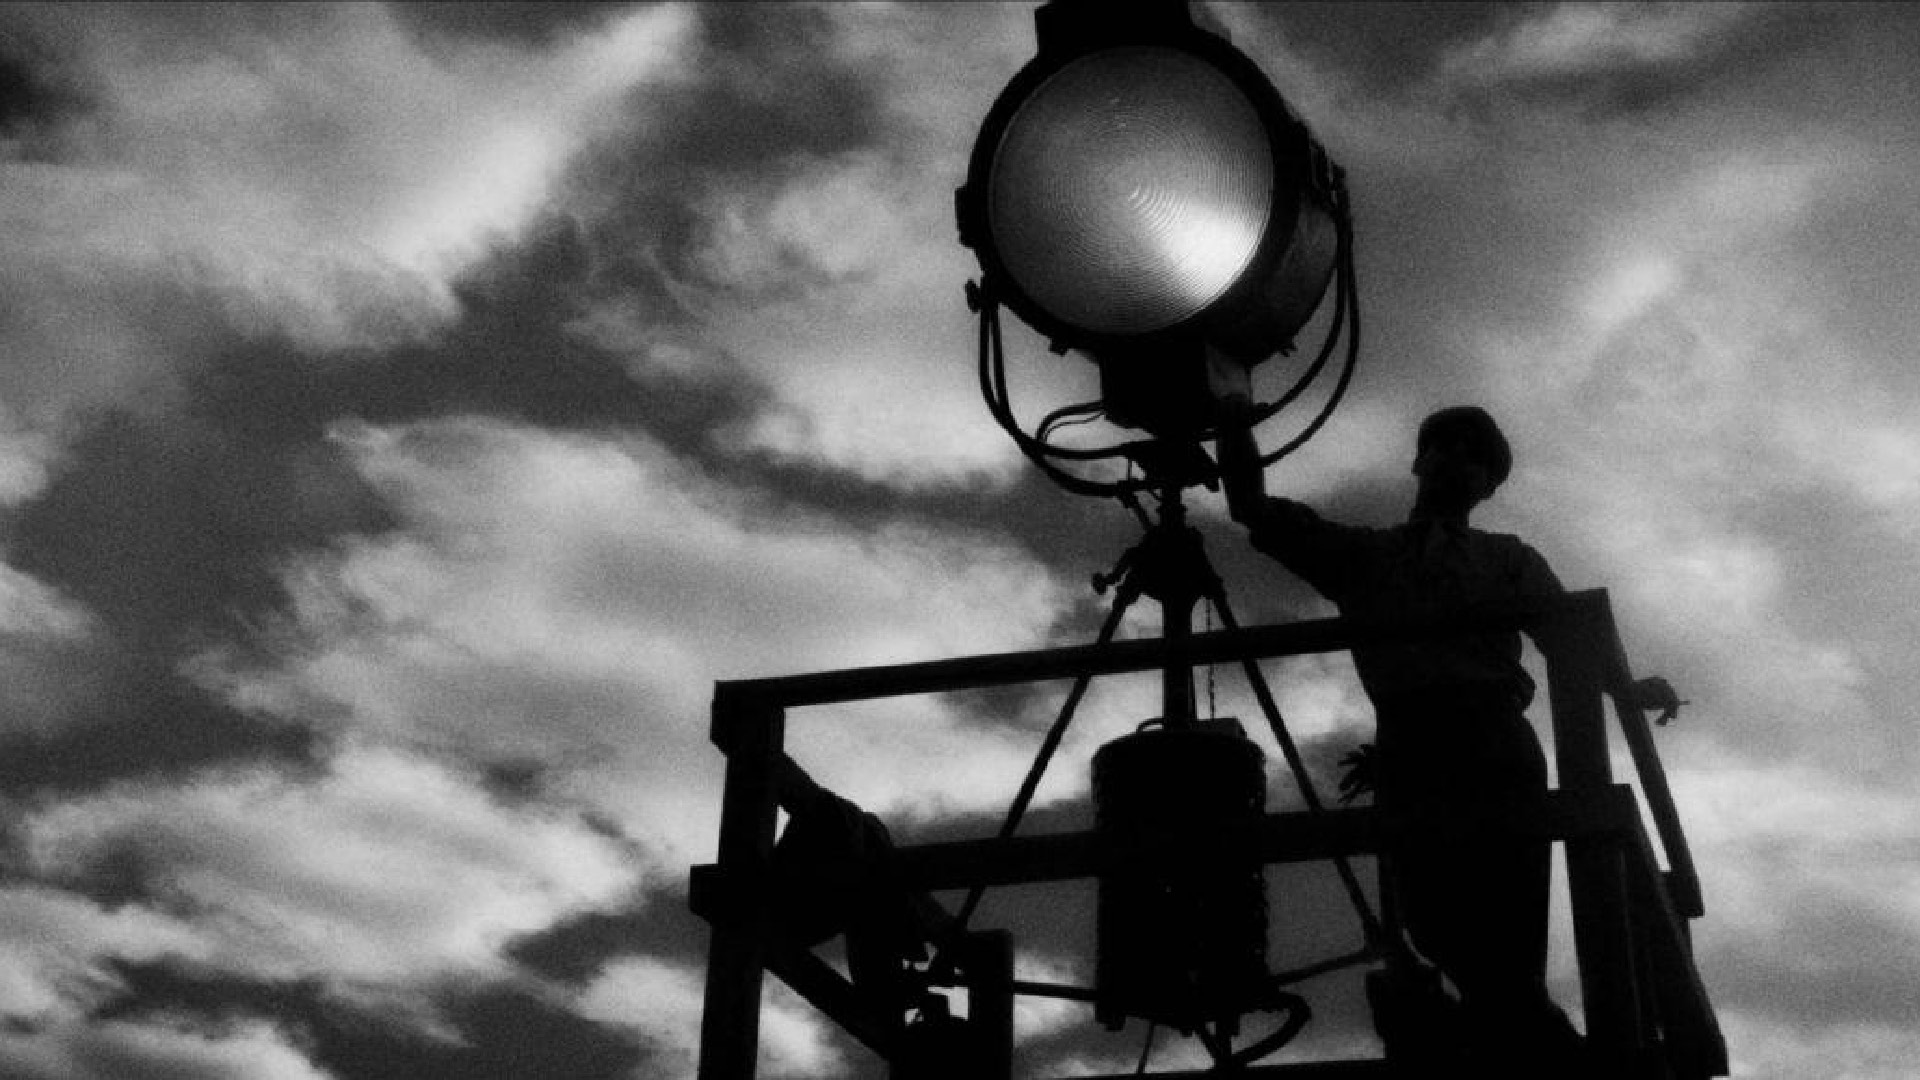 MANK film still of a man holding a spotlight